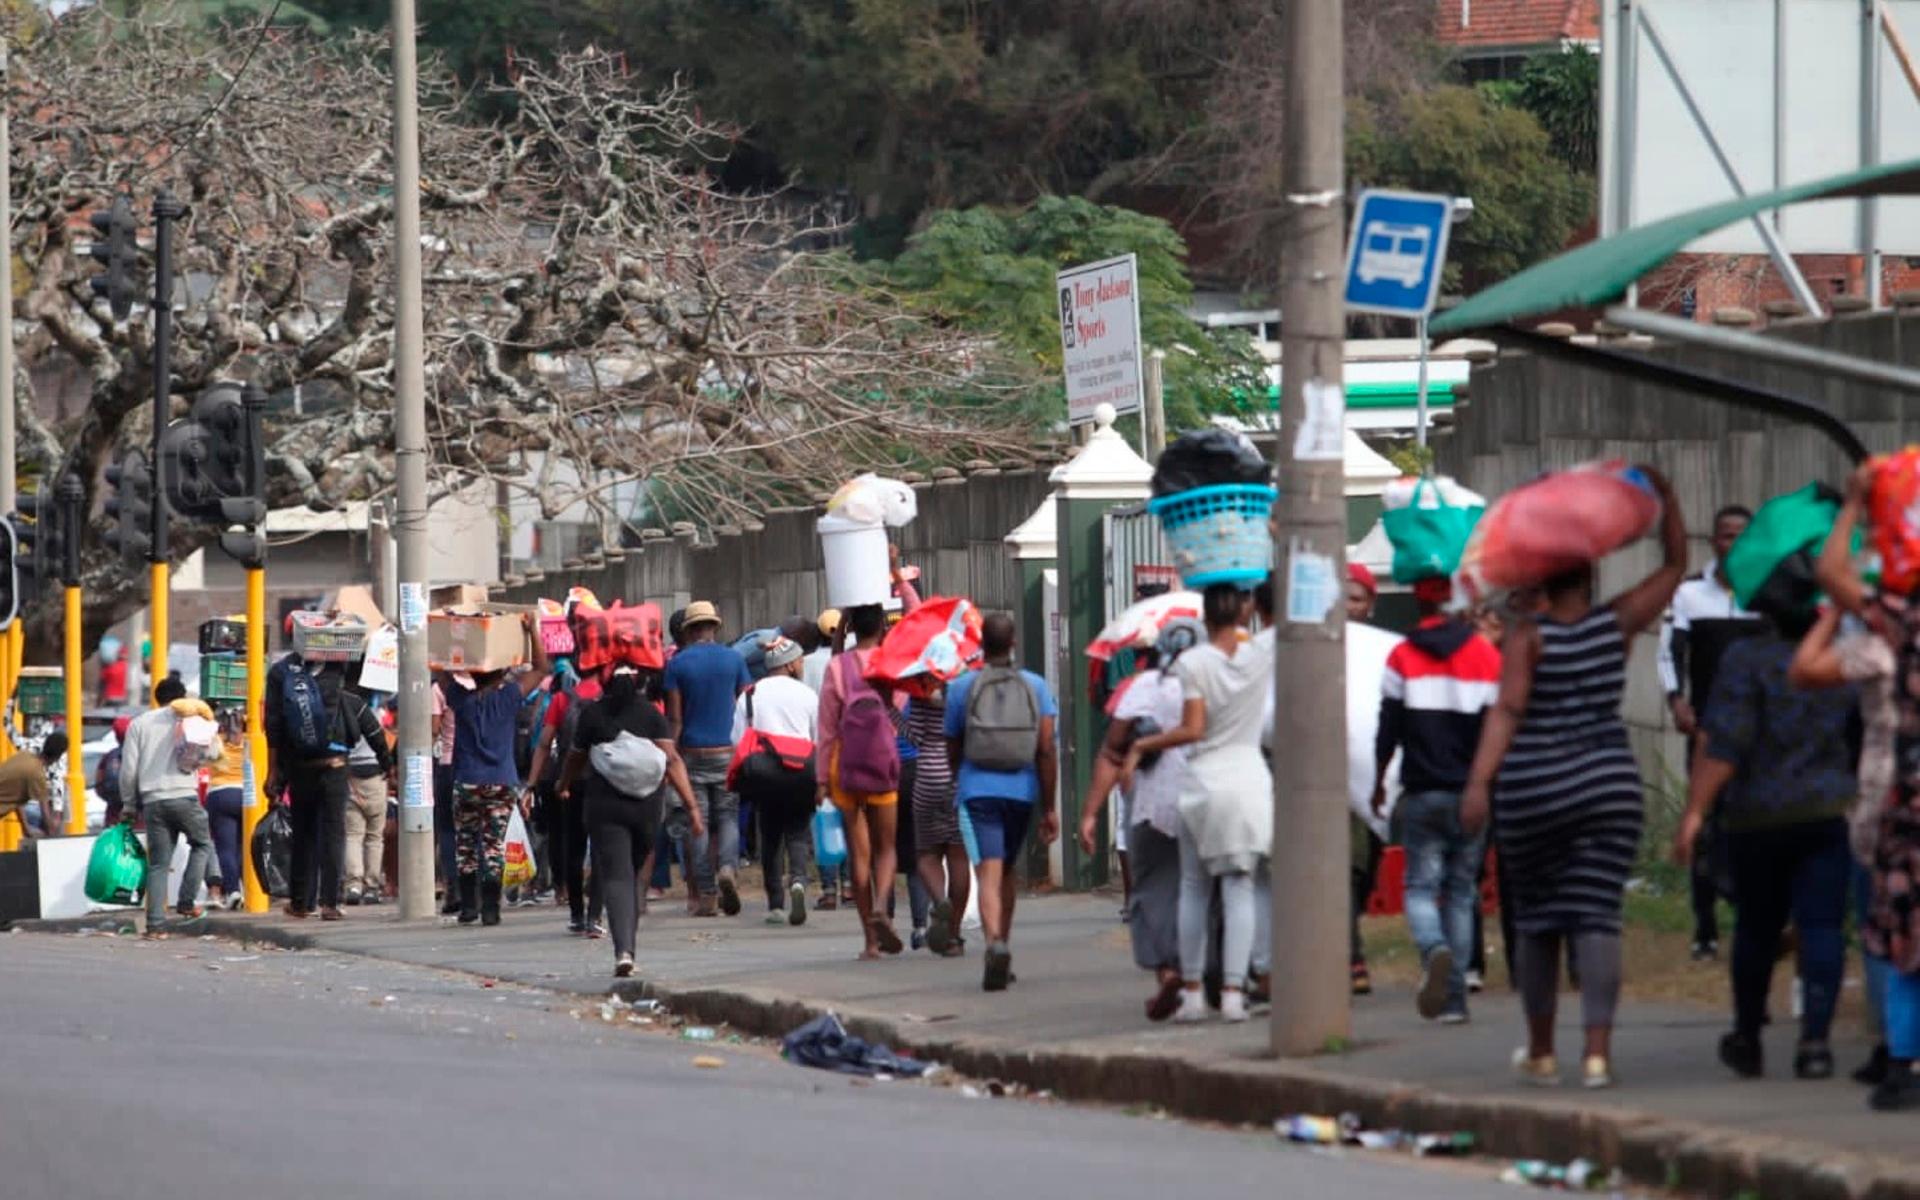 Här går ett flertal personer med gods från ett köpcentrum i staden Durban.